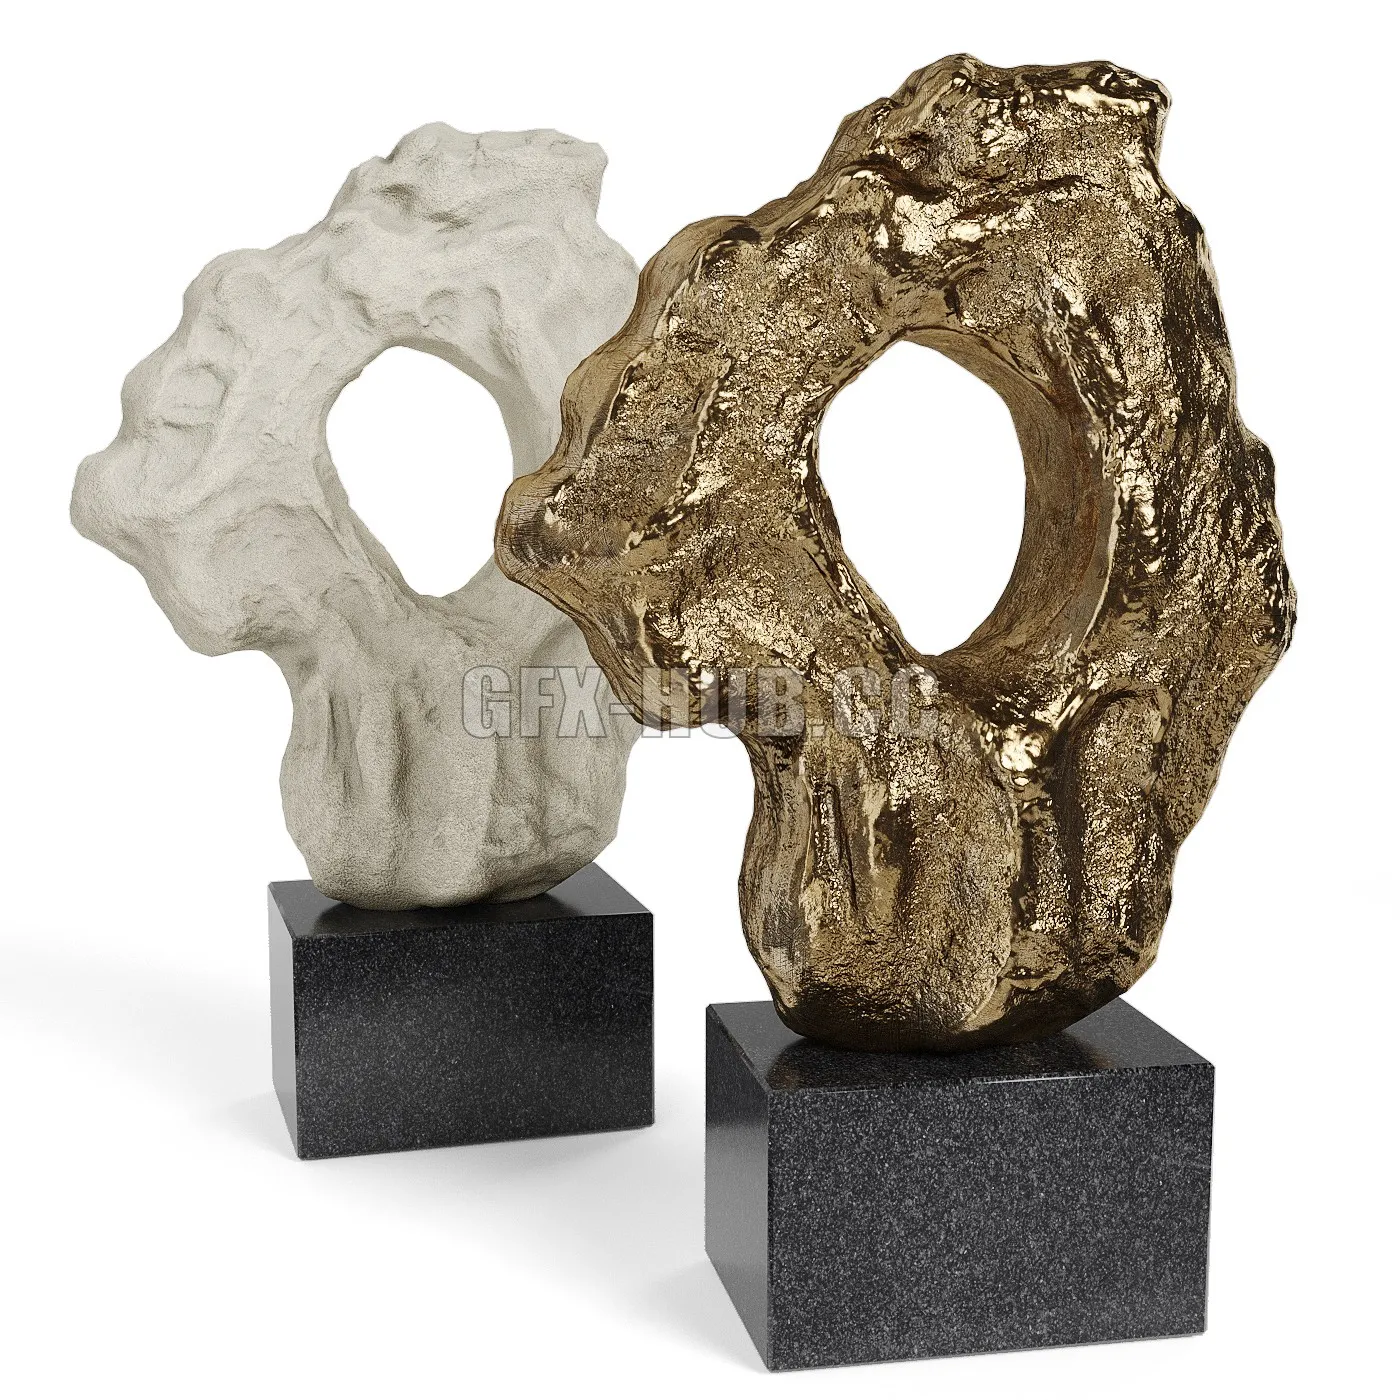 PRO MODELS – CLIVE BARKER and Large Scholar Rock sculptures